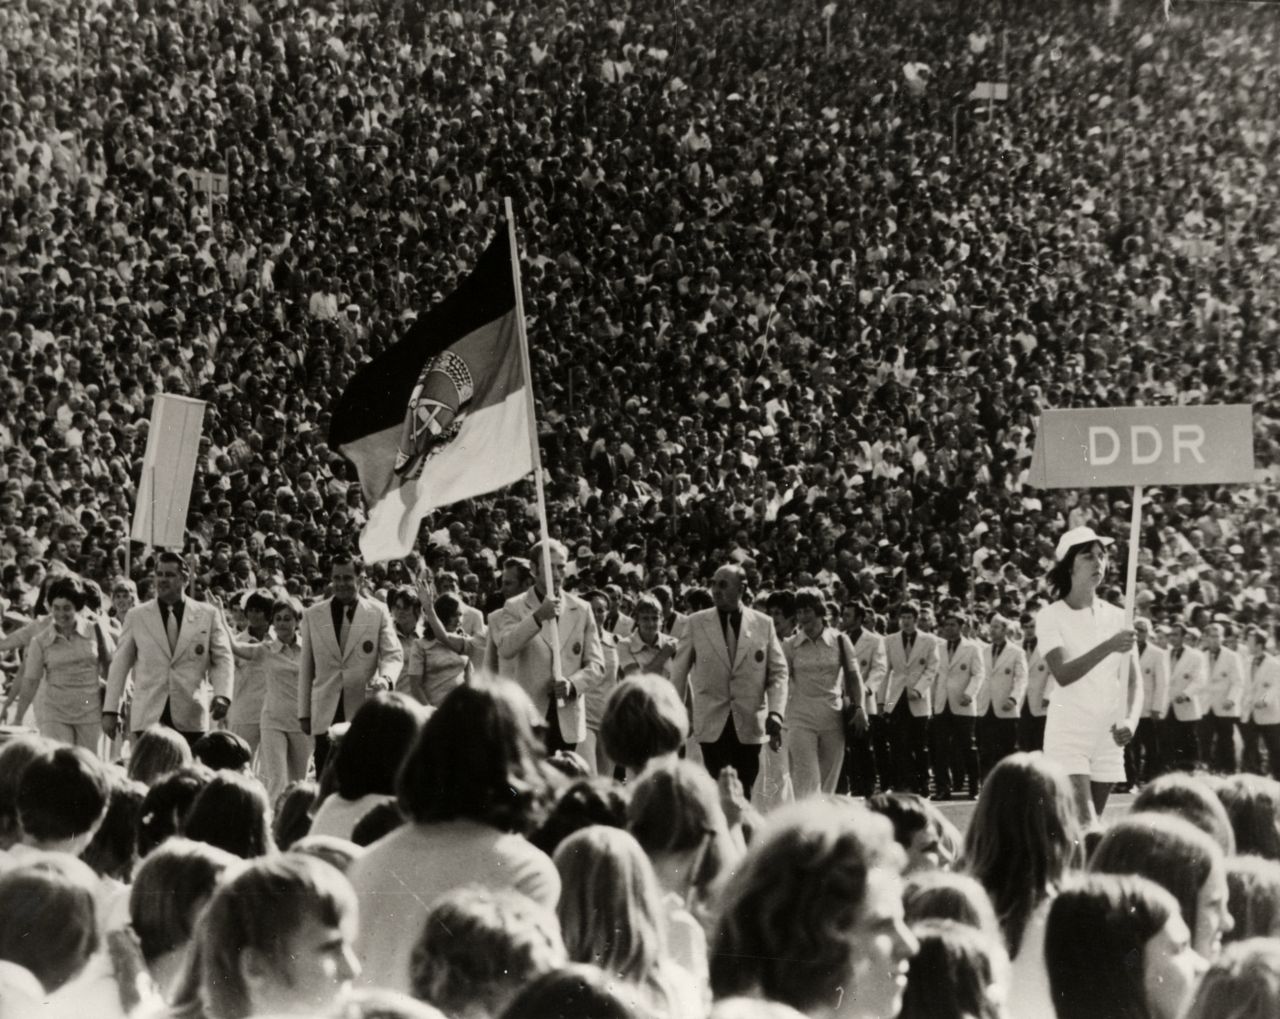 Mittelgrund: Eine Formation von Männern in Anzügen und Frauen in Blusen. An ihrem Anfang trägt ein Mann die Flagge der DDR. Vor ihm geht eine junge Frau mit einem Schild mit der Aufschrift DDR. Im Hintergrund eine dicht besetzte Zuschauertribüne.